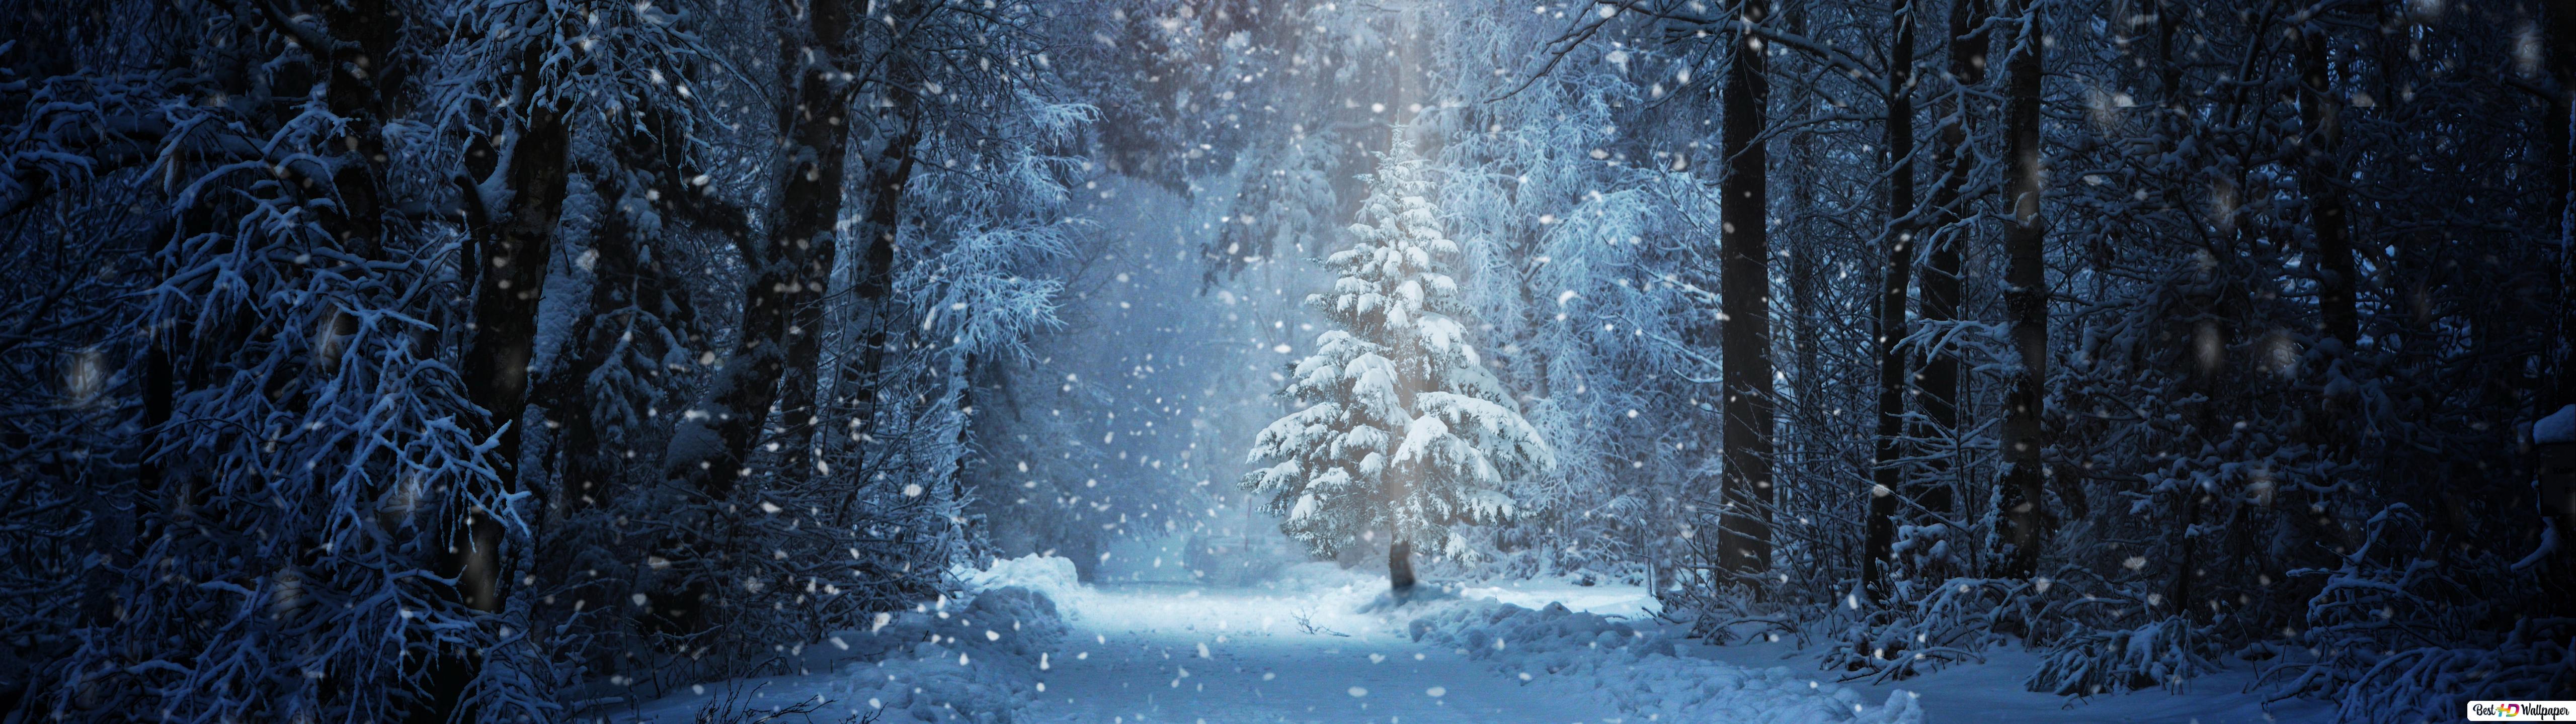 Tree on Snowy Winter Road HD wallpaper download